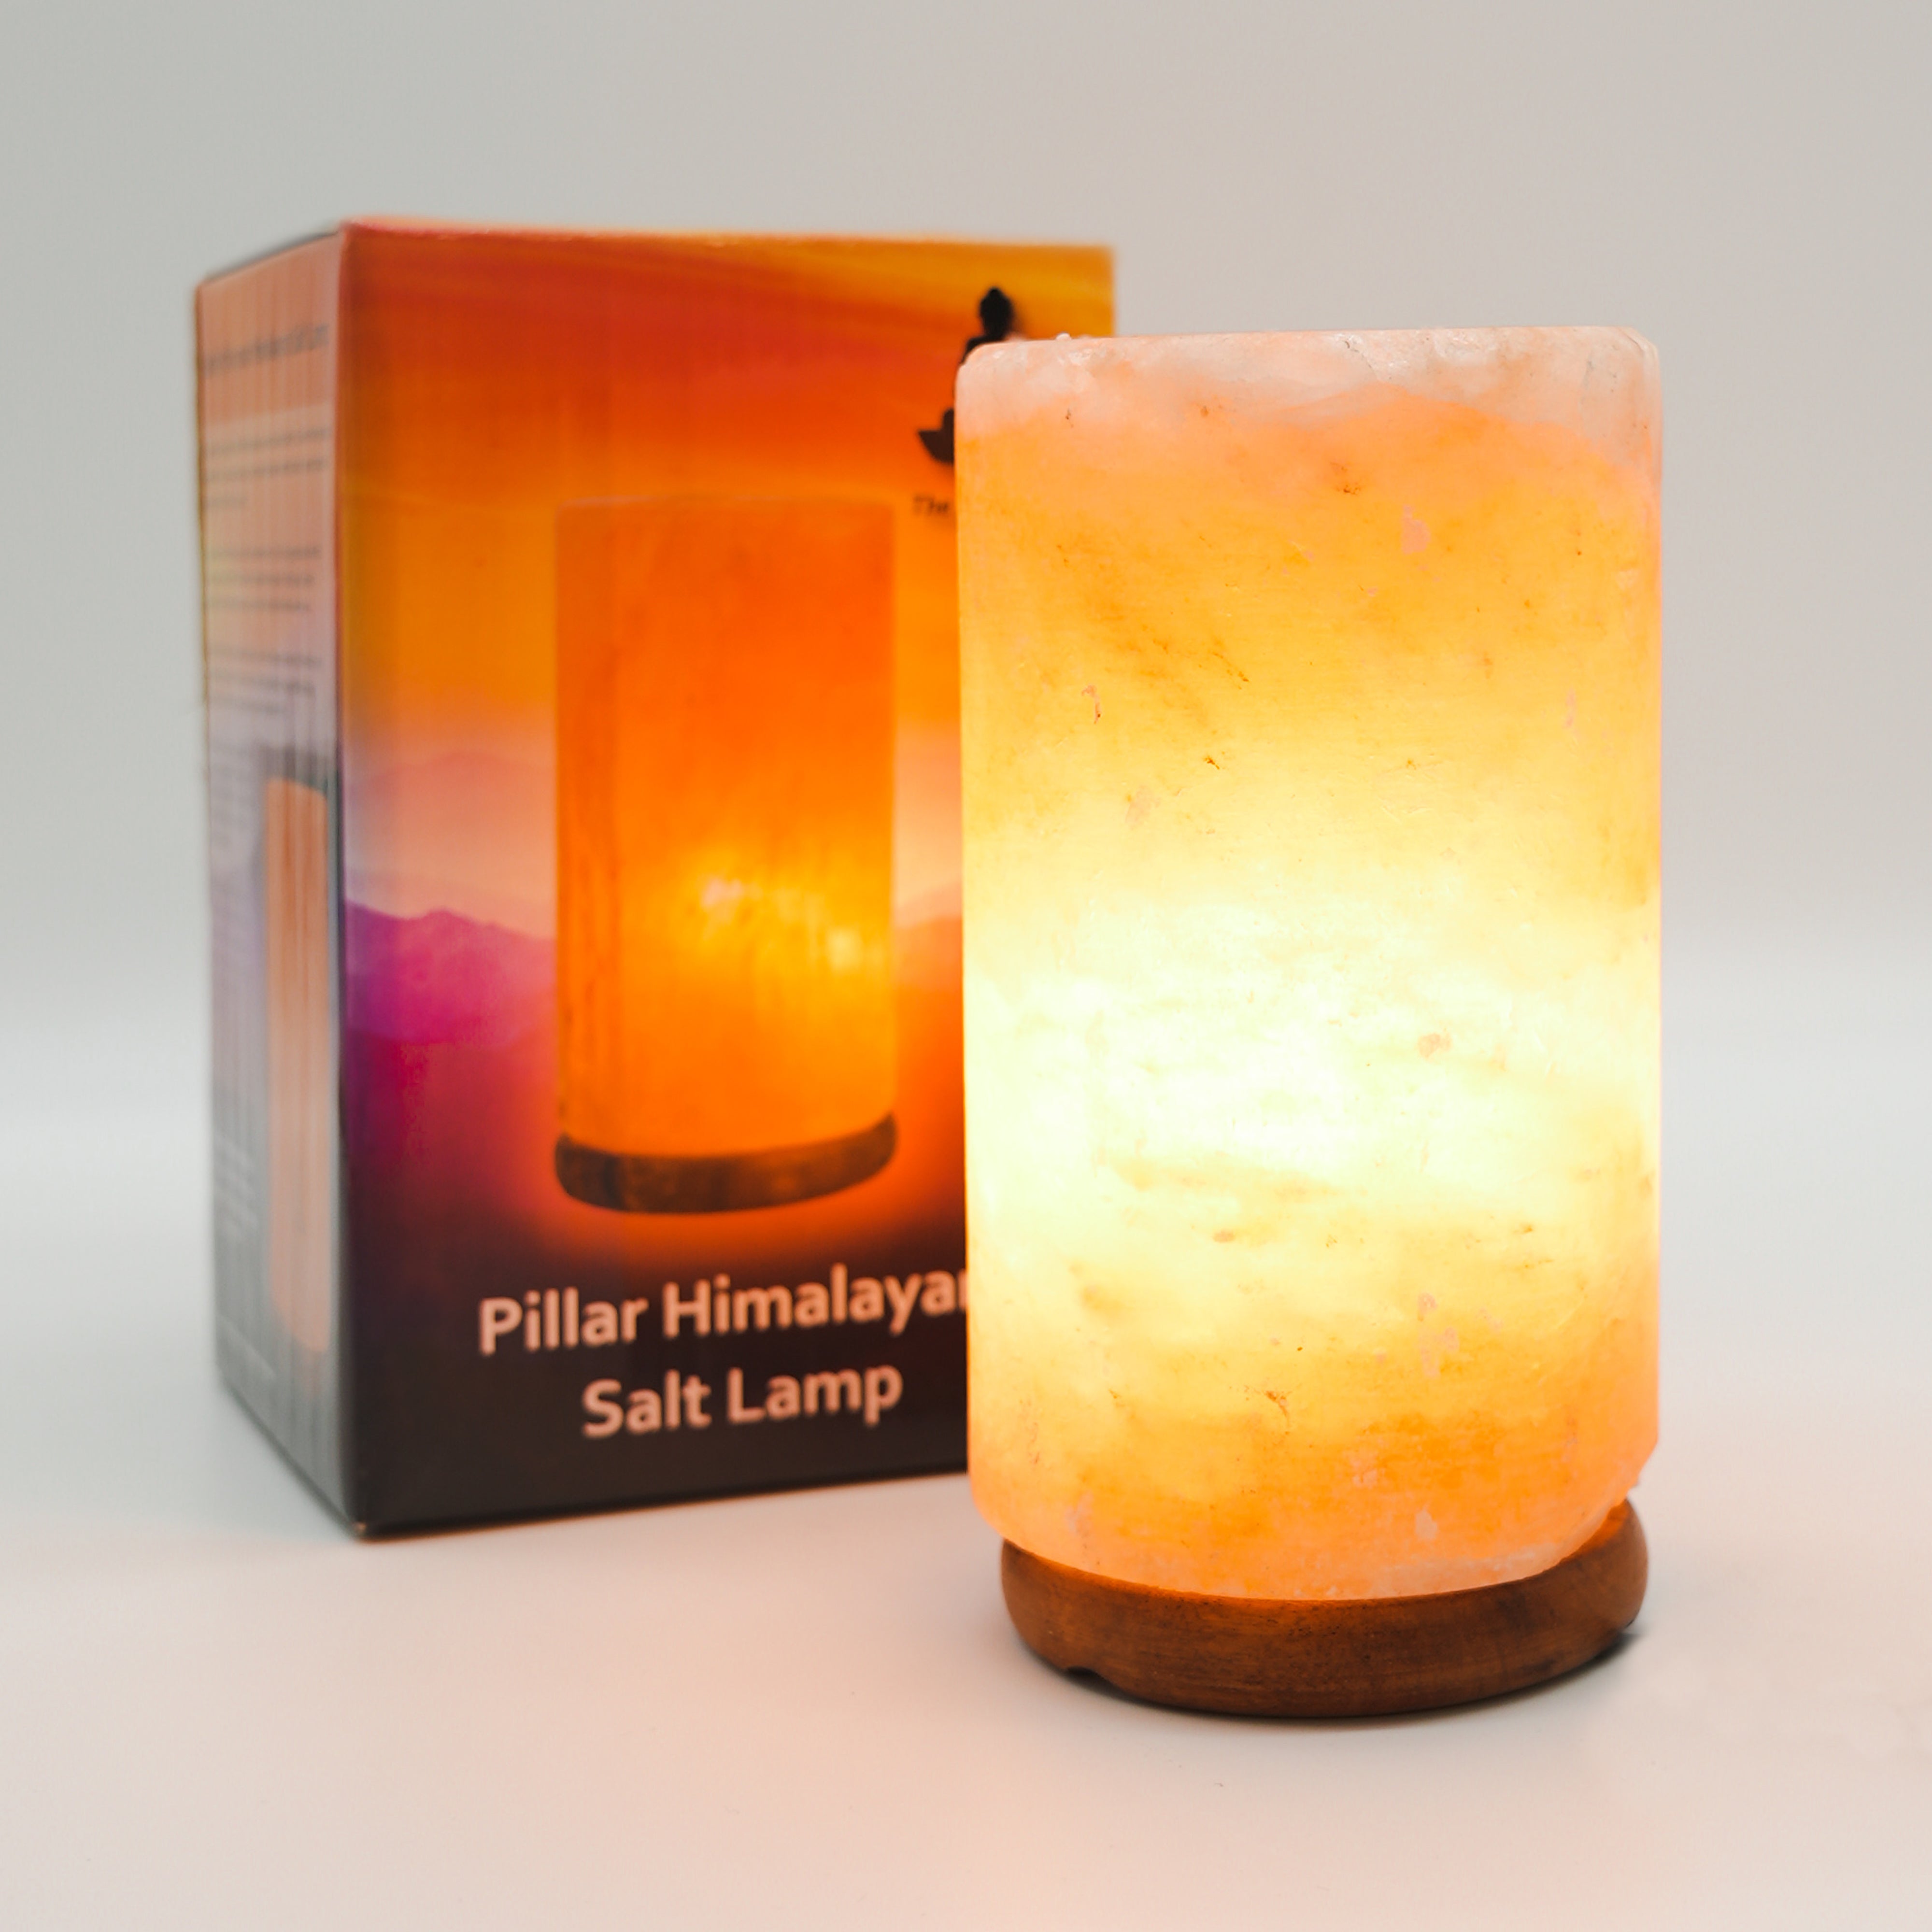 The Salt of Life - Himalayan Salt Lamp Pillar